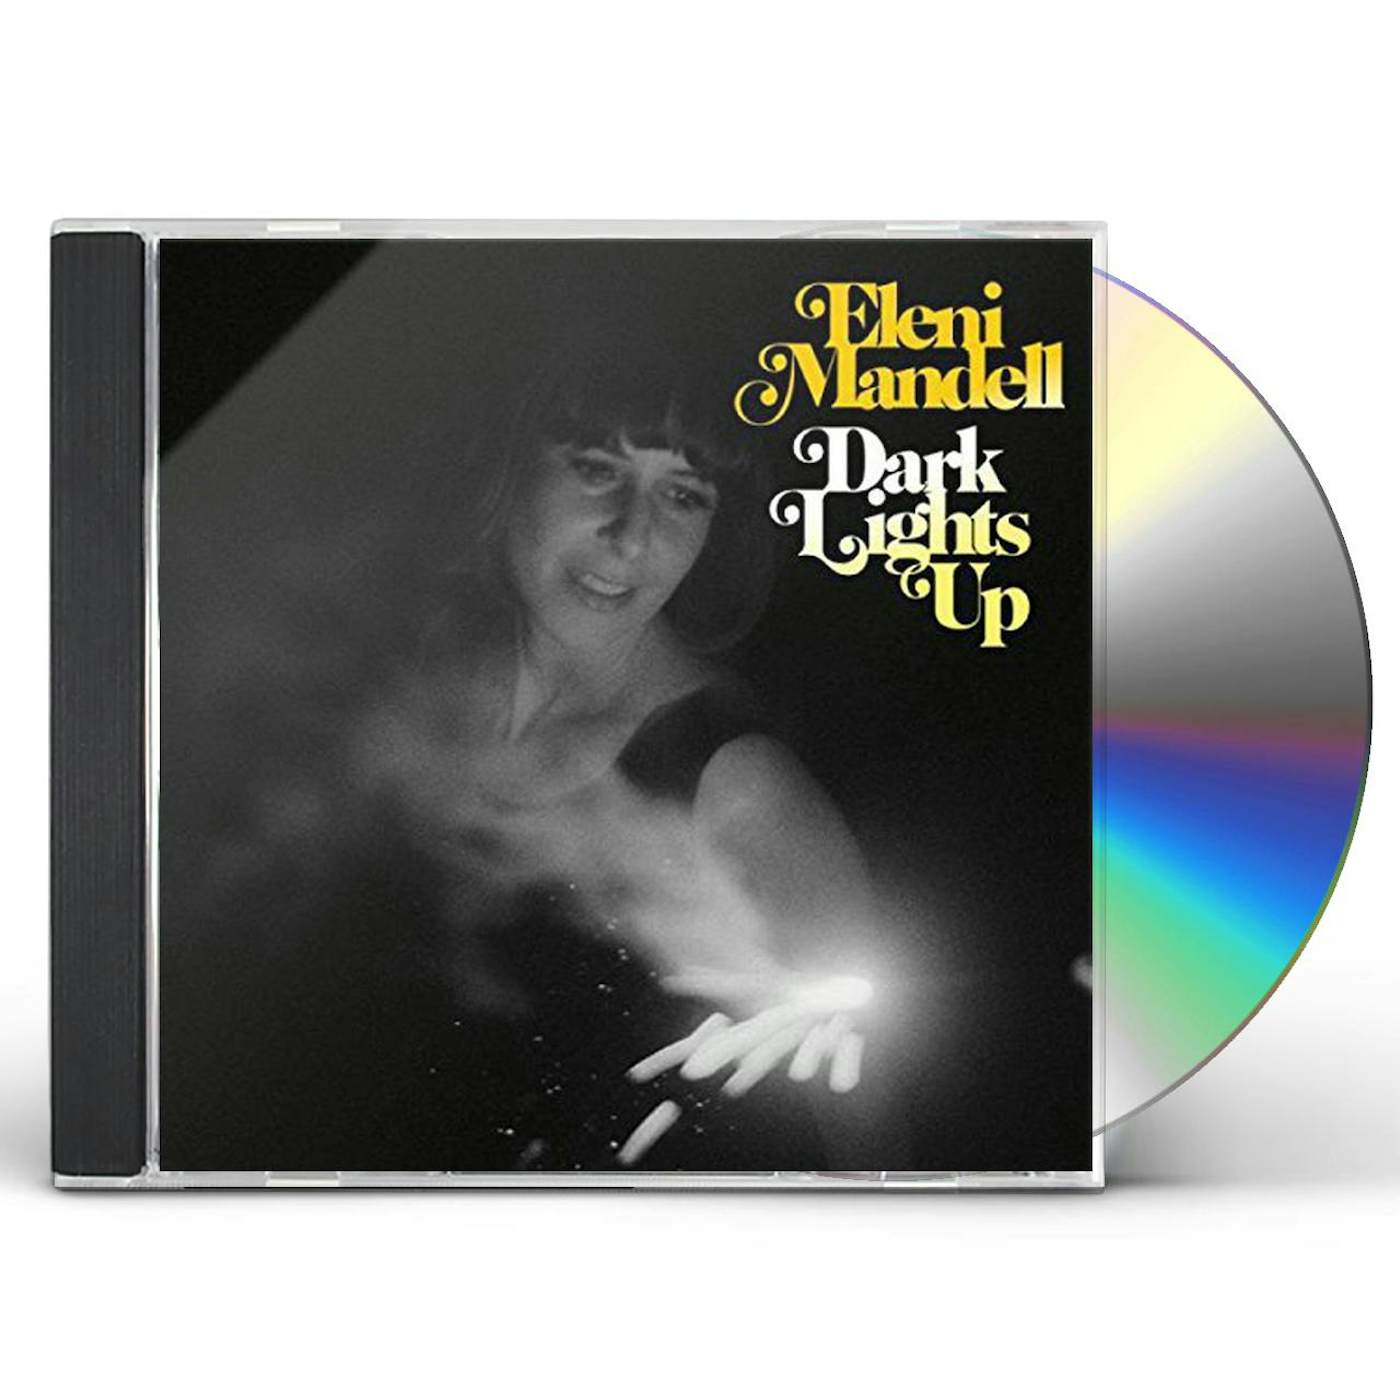 Eleni Mandell DARK LIGHTS UP CD